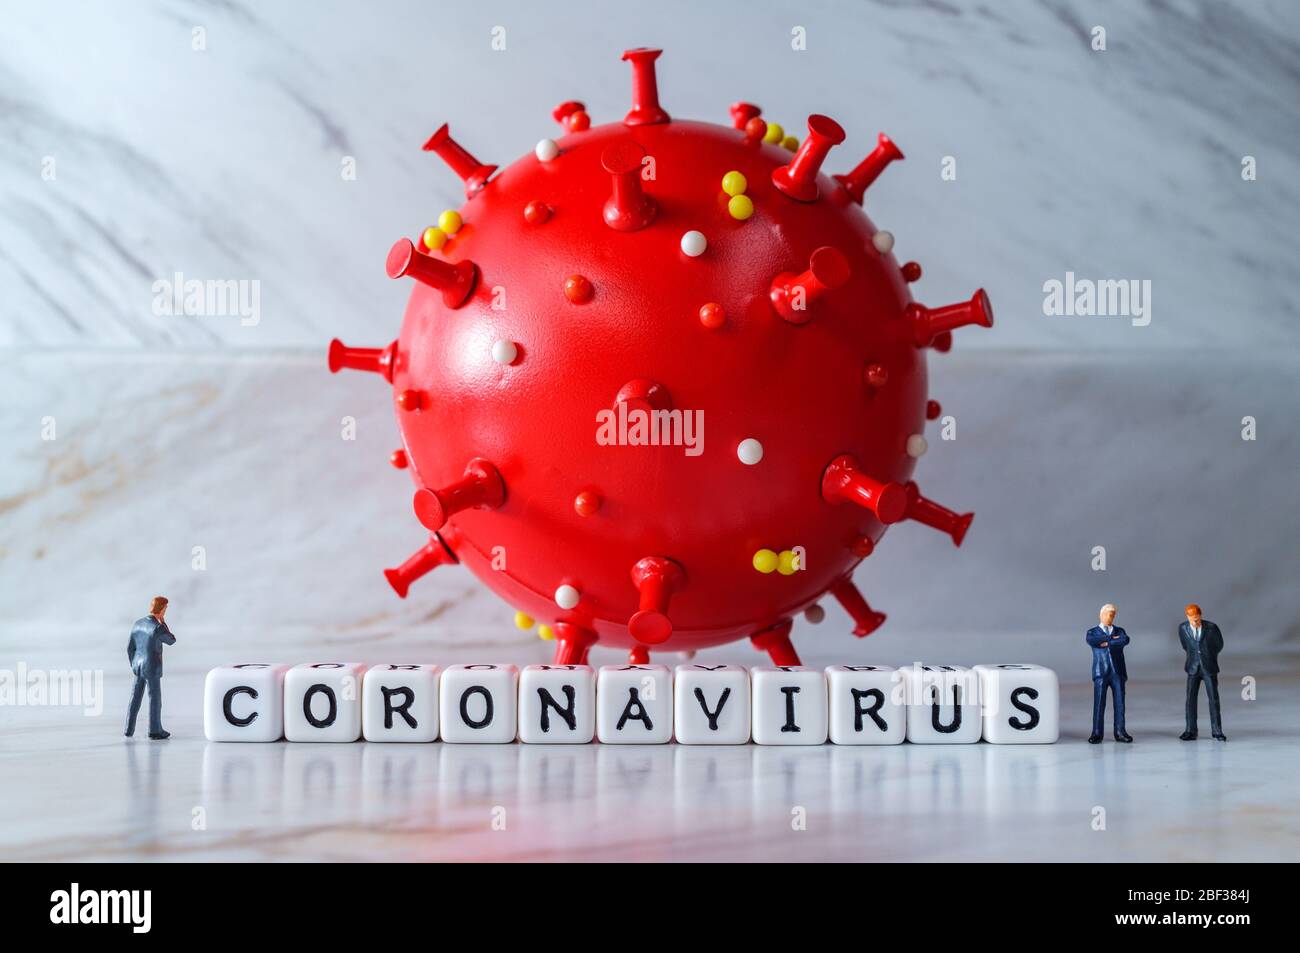 Los hombres de negocios ignoran el distanciamiento social mientras se encuentran en presencia del letal coronavirus Foto de stock